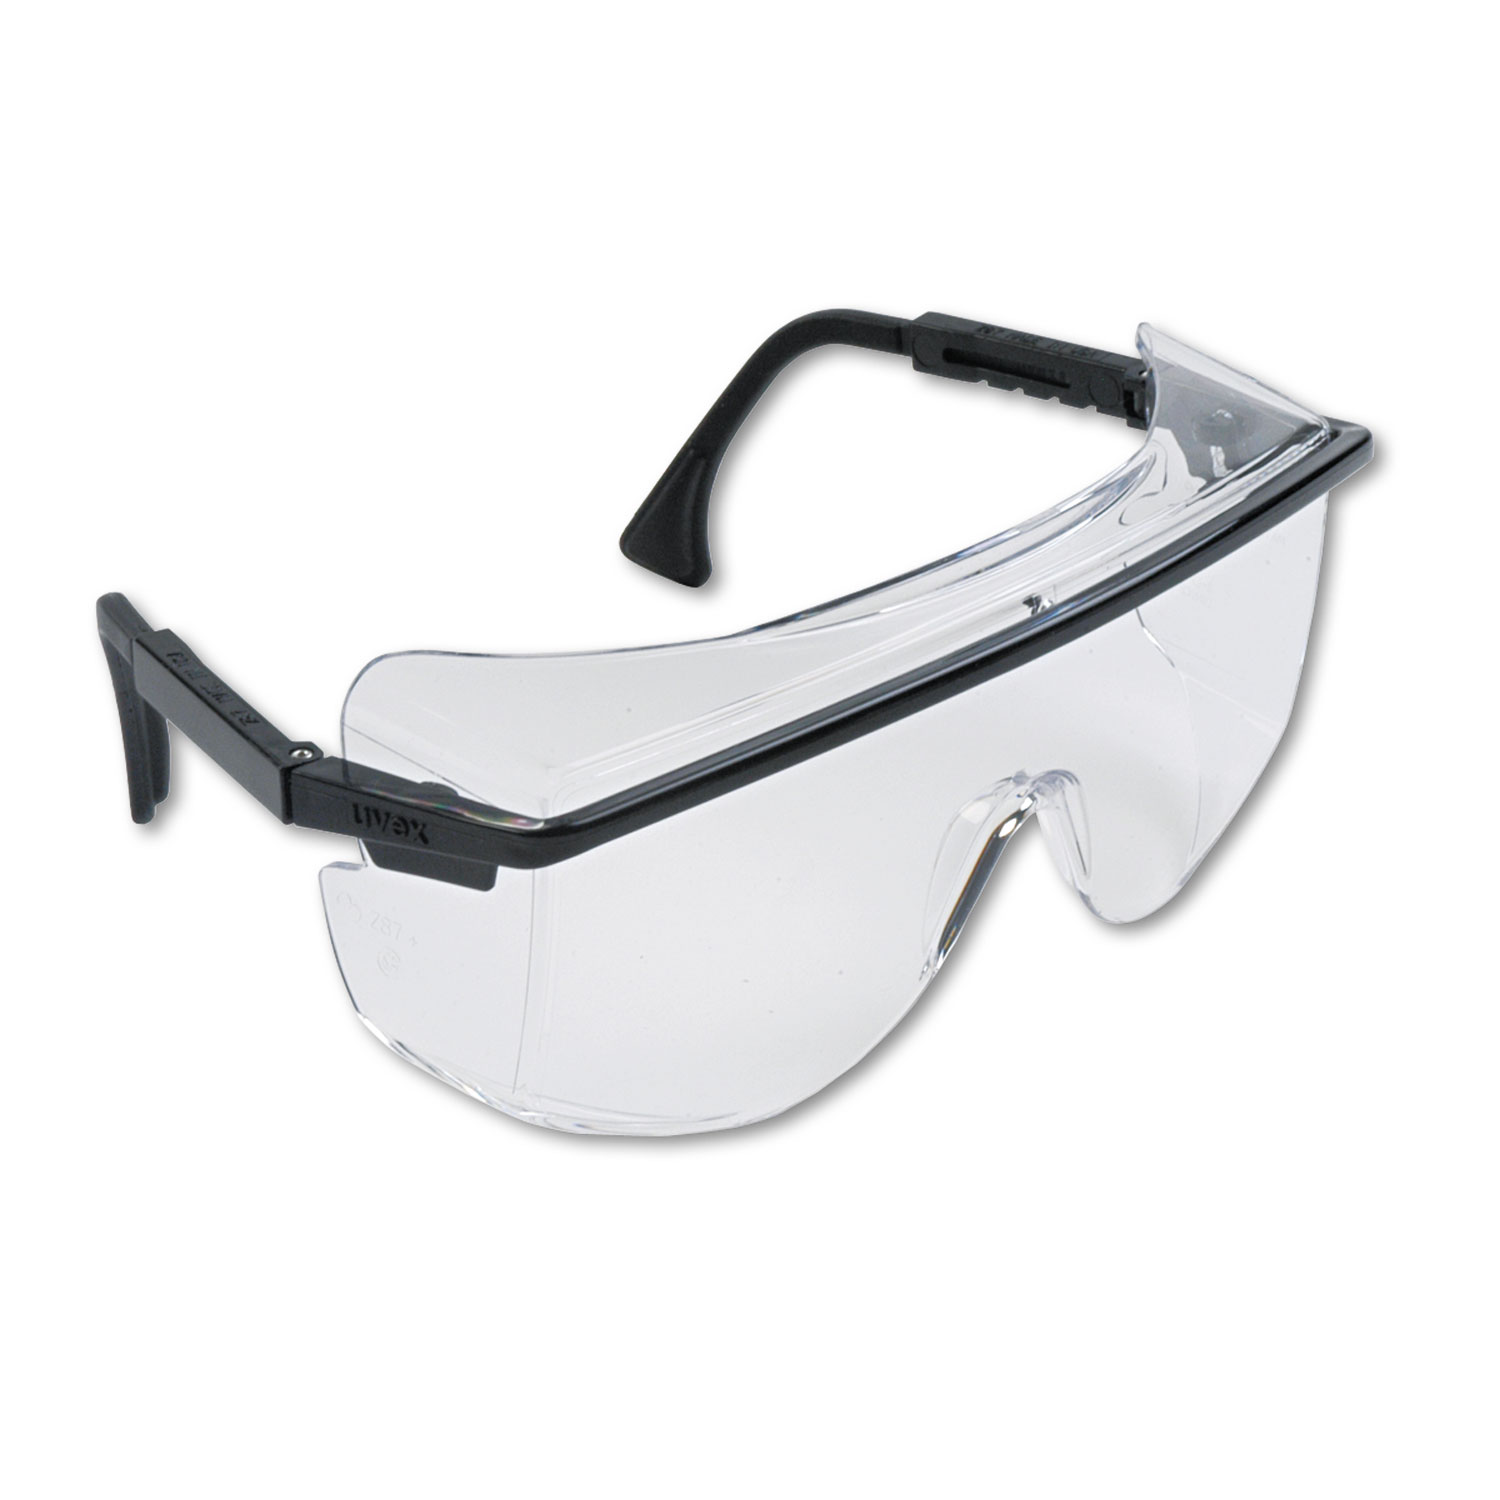  Honeywell Uvex S2500 Astro OTG 3001 Wraparound Safety Glasses, Black Plastic Frame, Clear Lens (UVXS2500) 